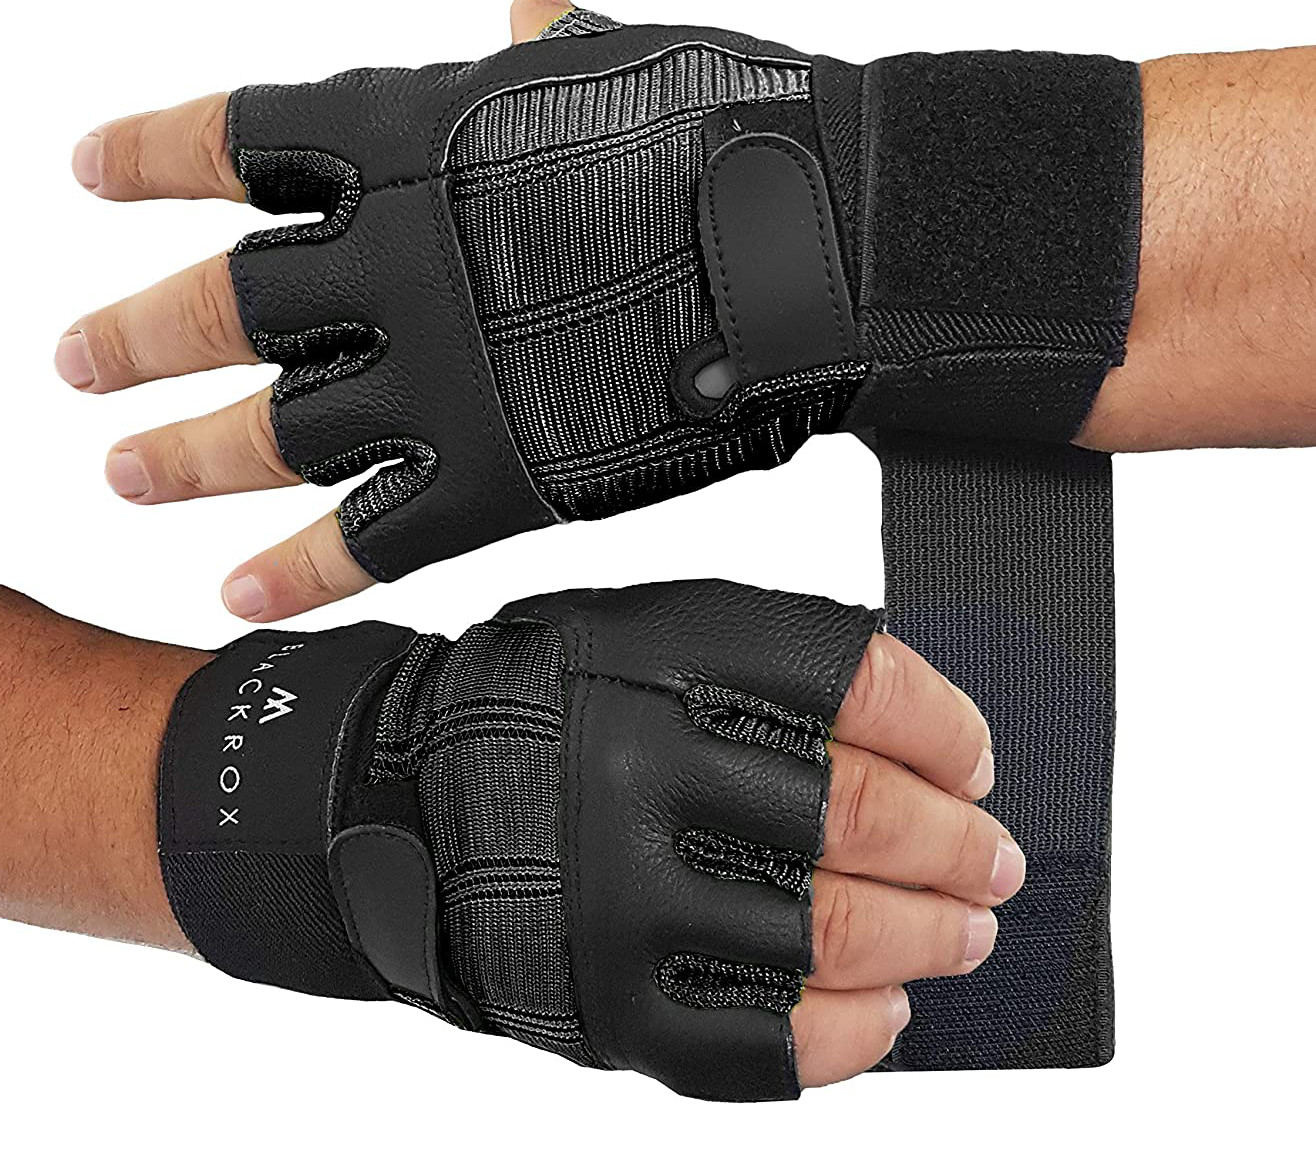 Bodybuildinghandschuhe Fitnesshandschuhe Handschuhe Trainingshandschuhe Gloves 